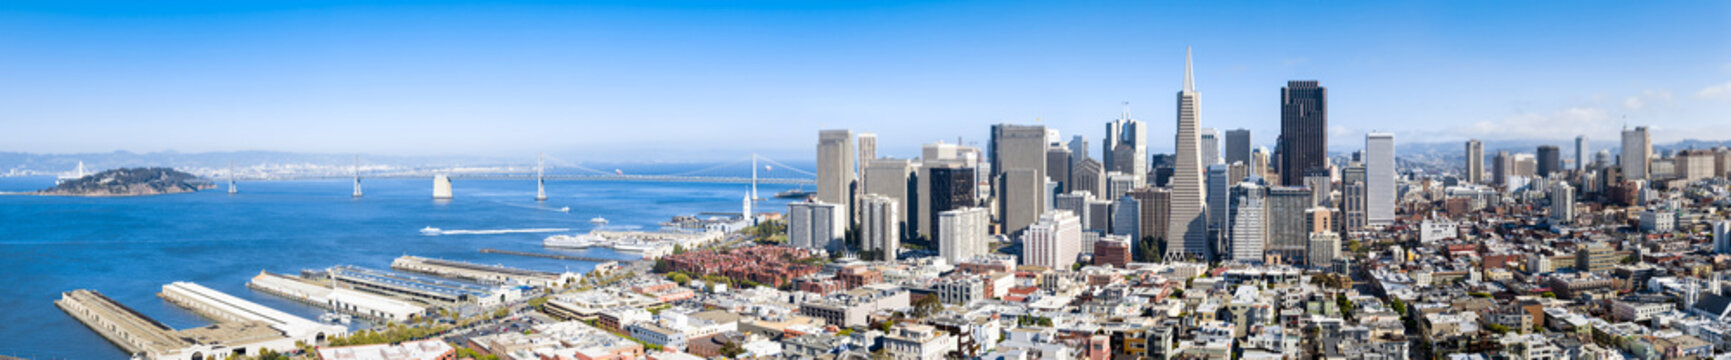 San Francisco Skyline Banner als Hintergrund